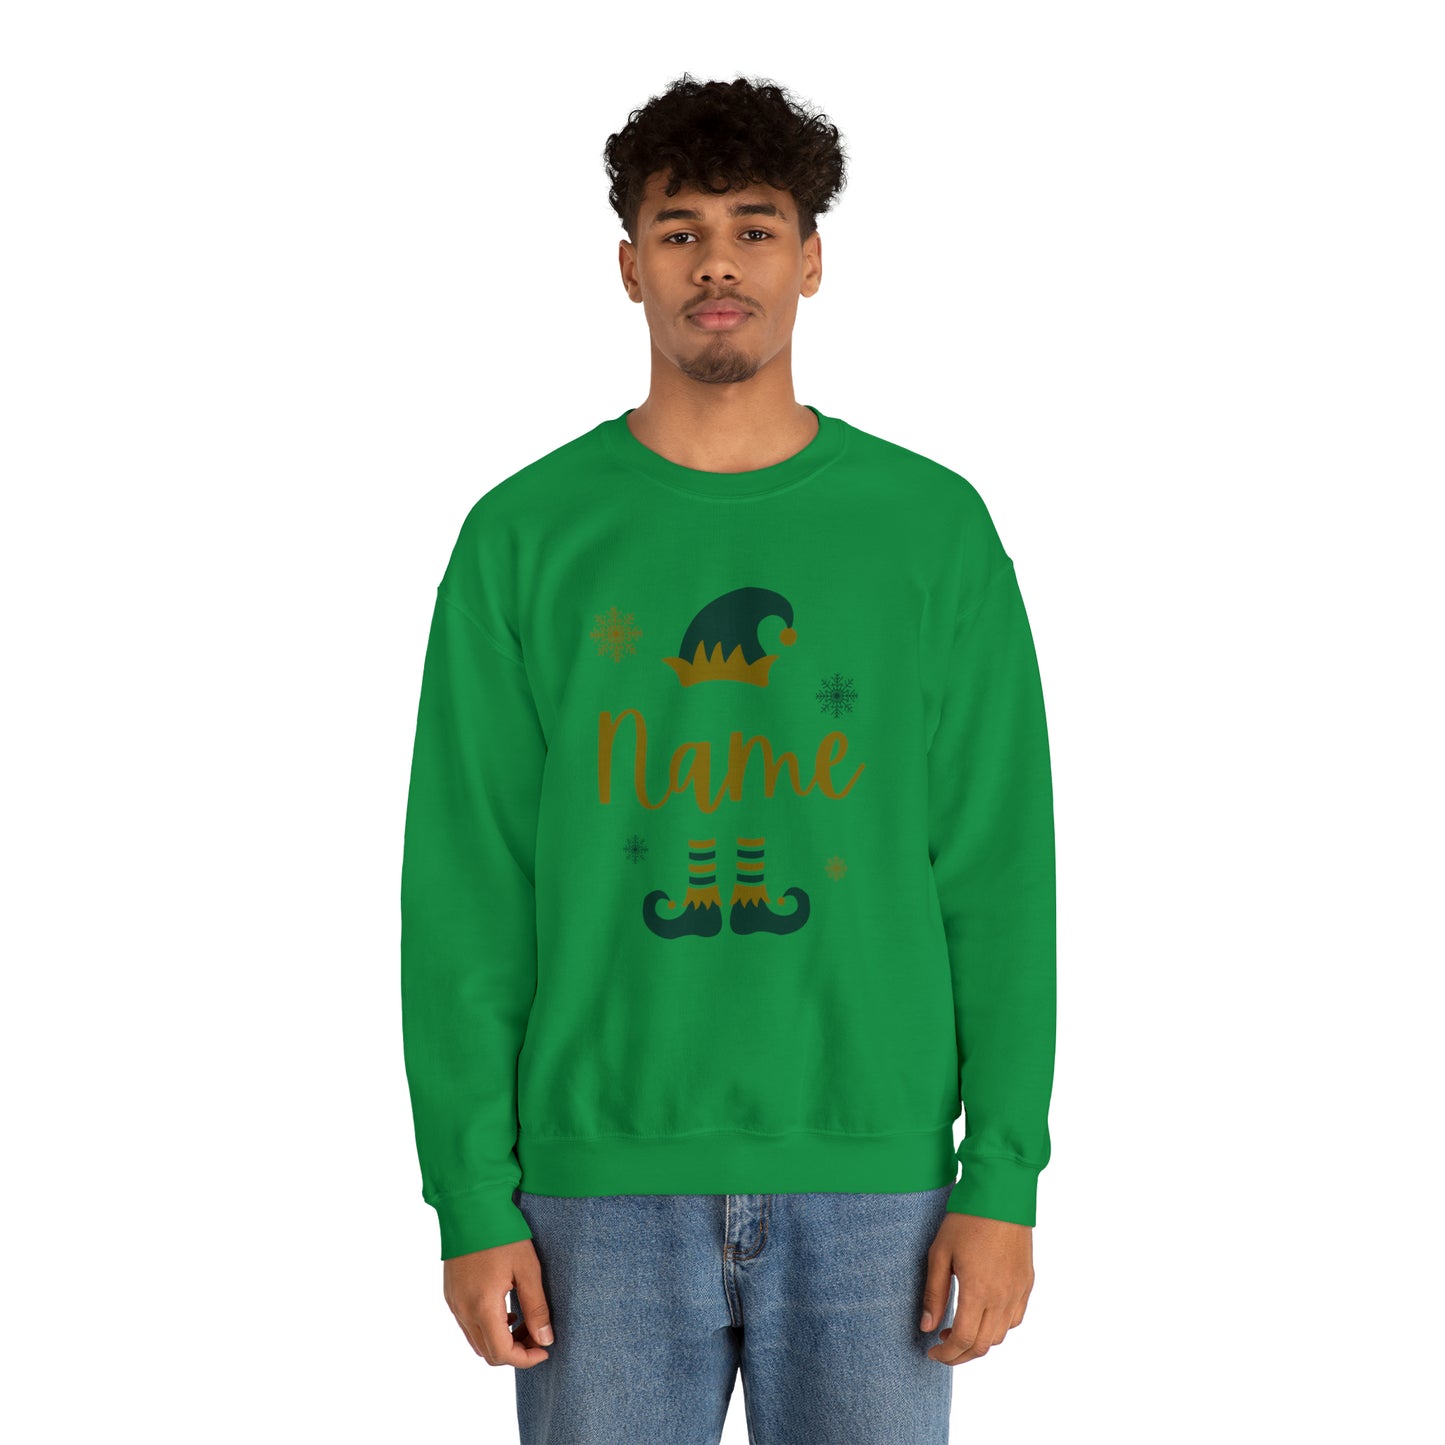 Personalized Name Elf Merry Christmas Crewneck Sweatshirt